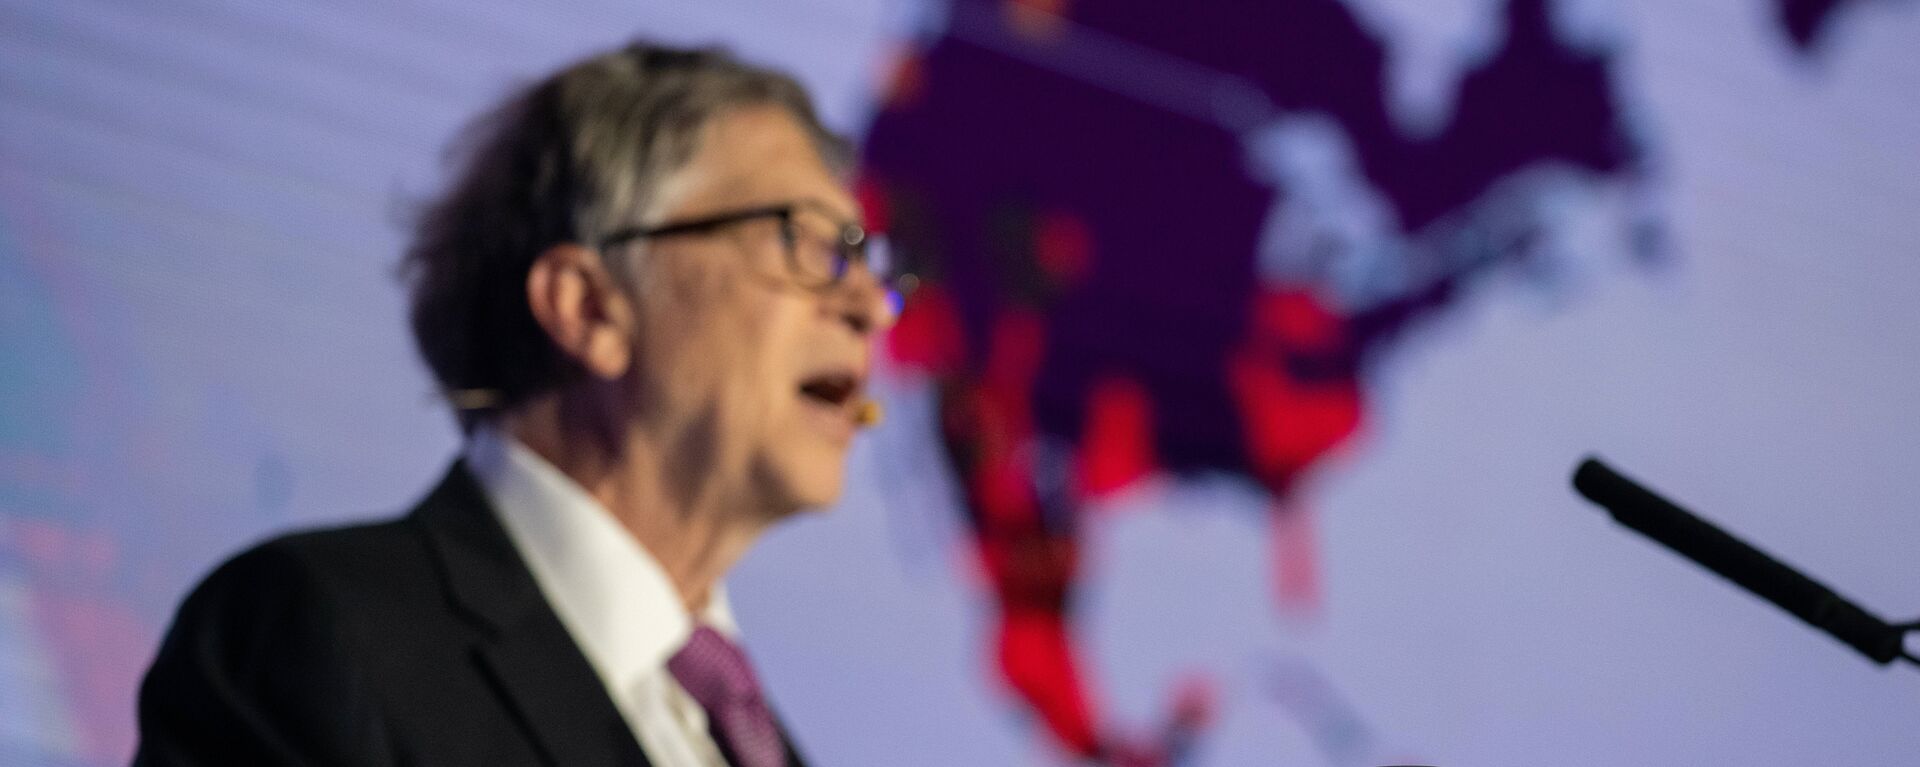 Bill Gates, sahneye dışkıyla çıktı - Sputnik Türkiye, 1920, 06.11.2018